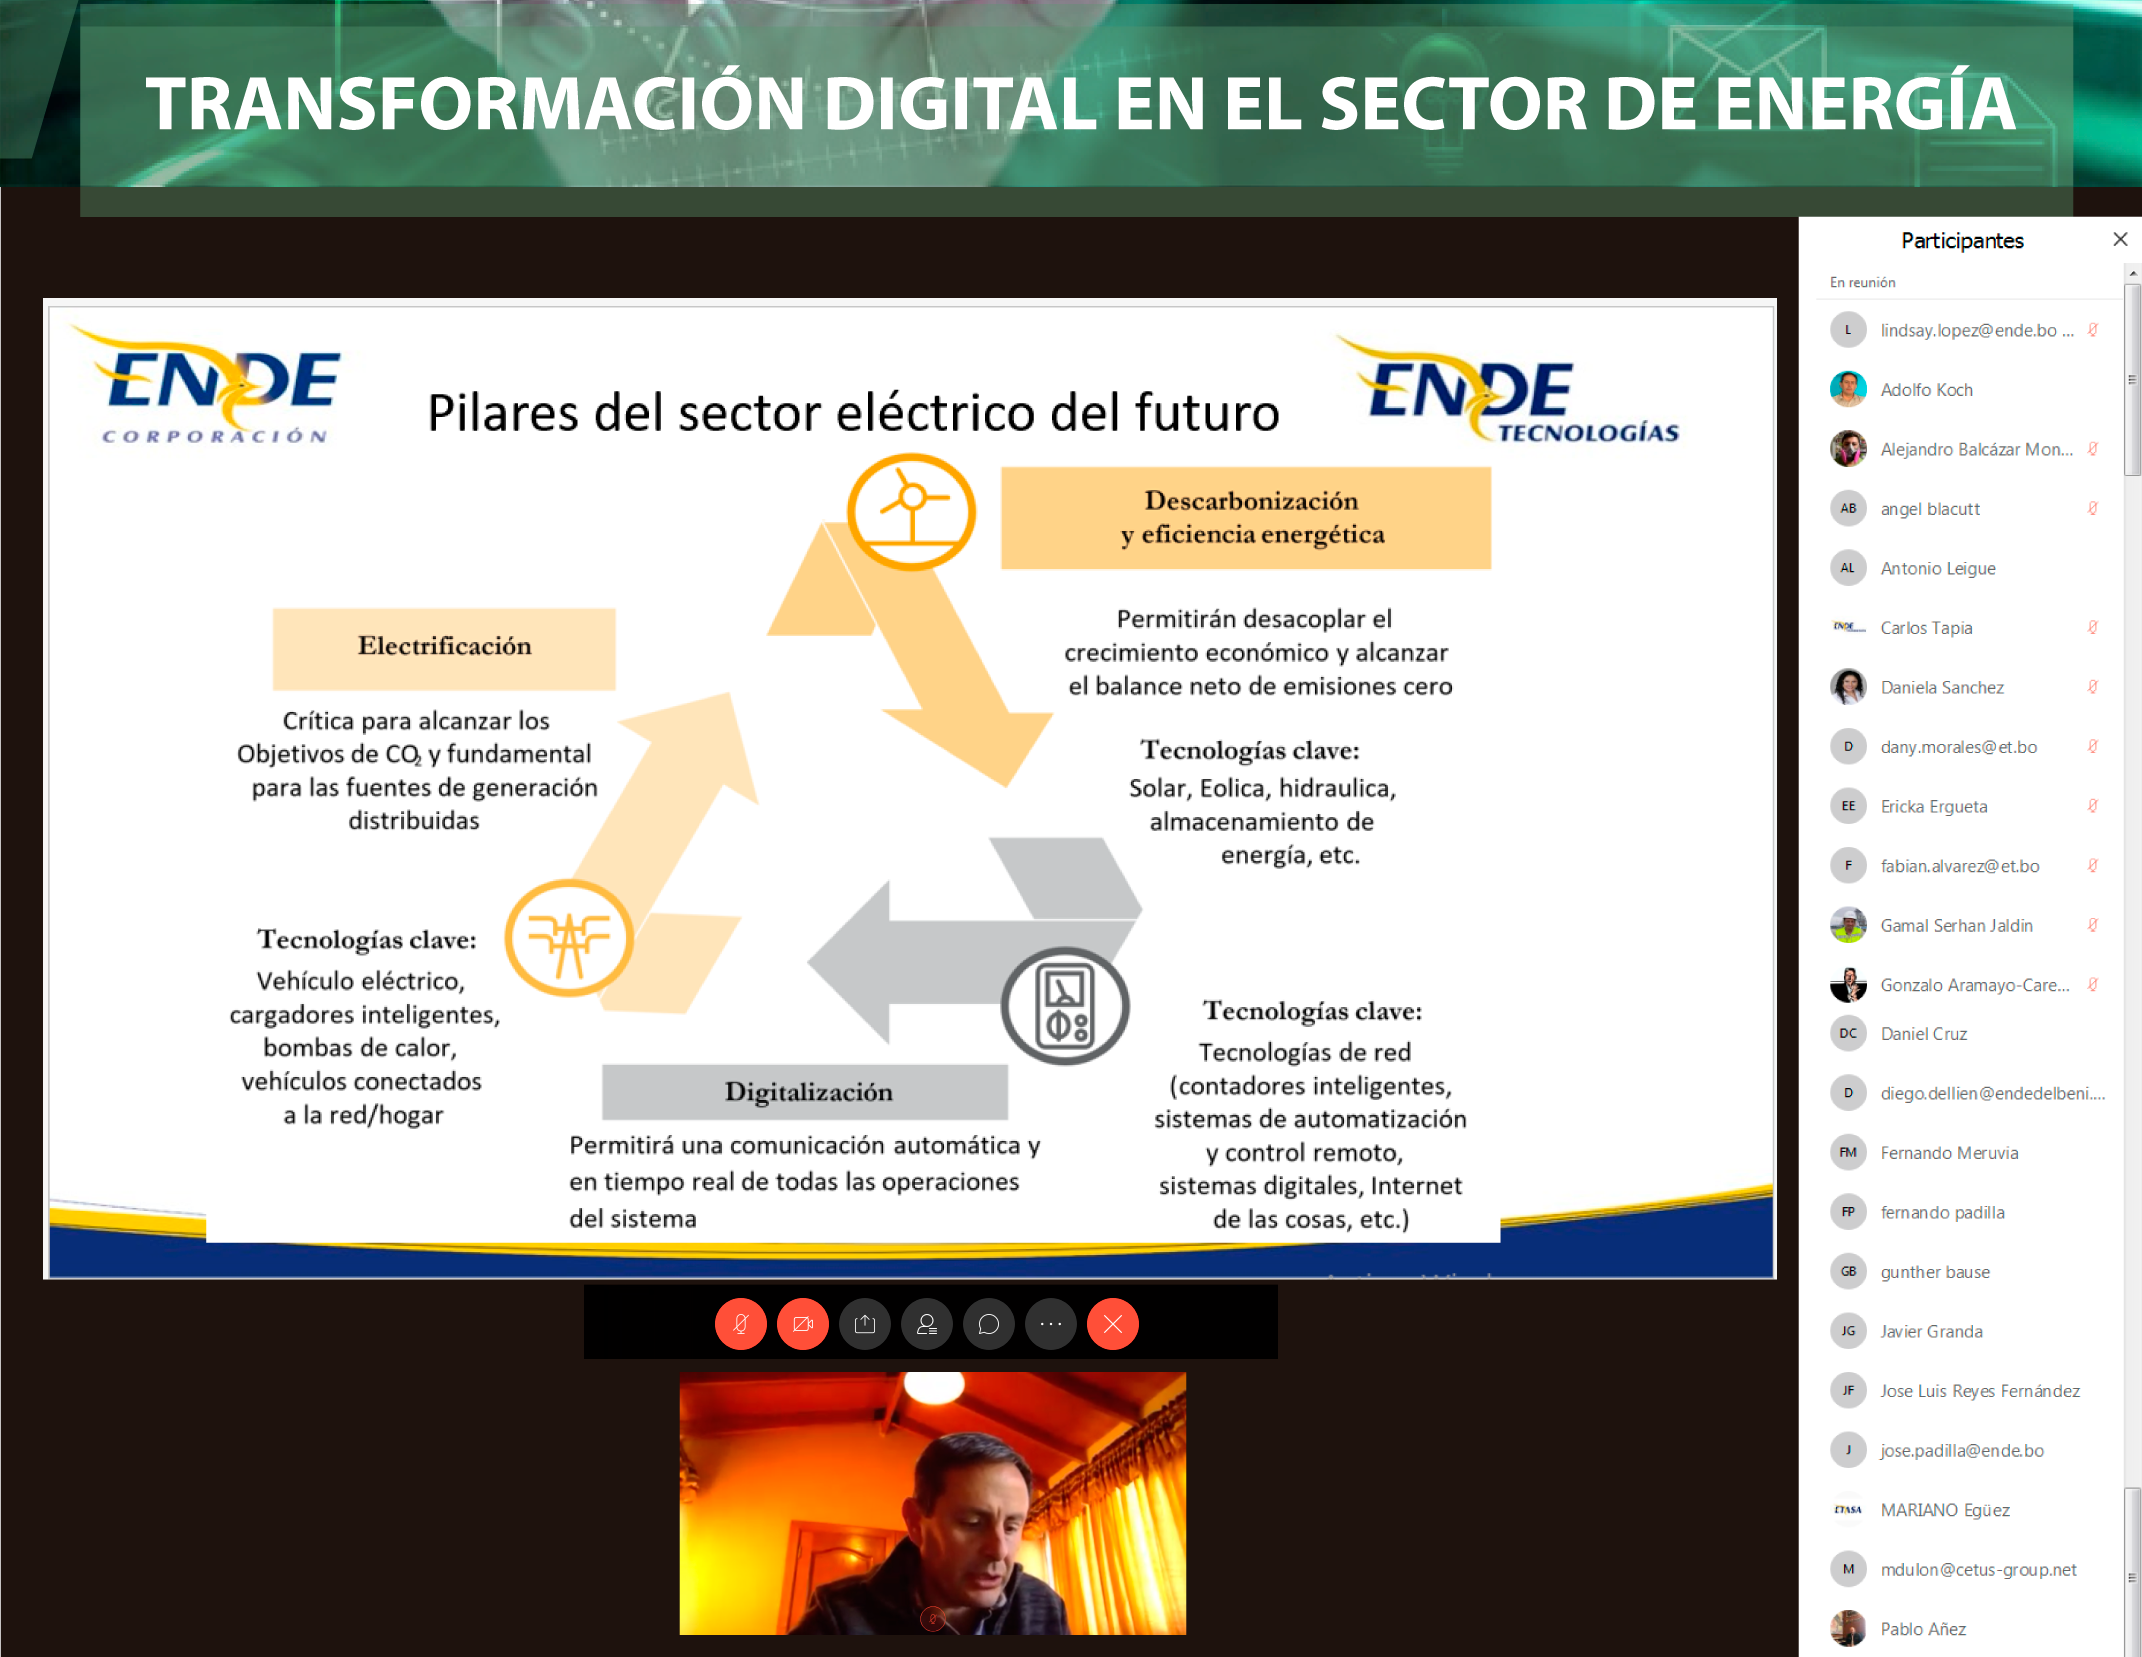 La digitalización, una oportunidad de transformación para el sector eléctrico